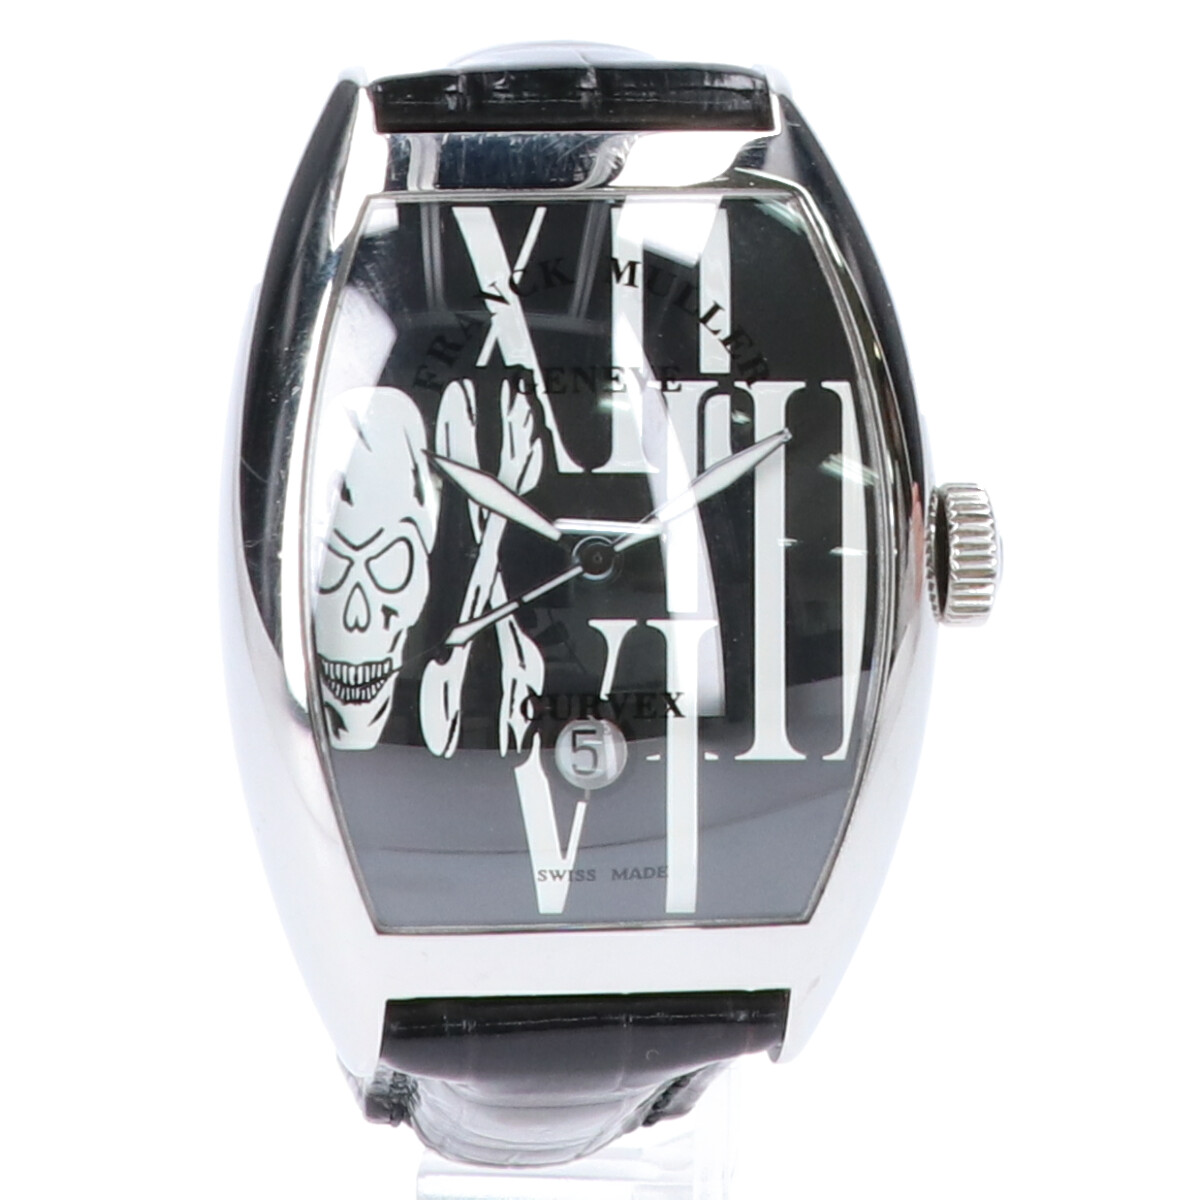 フランクミュラーの8880SCDTGOTH トノー カーベックス ゴシック アロンジェ 自動巻き時計の買取実績です。